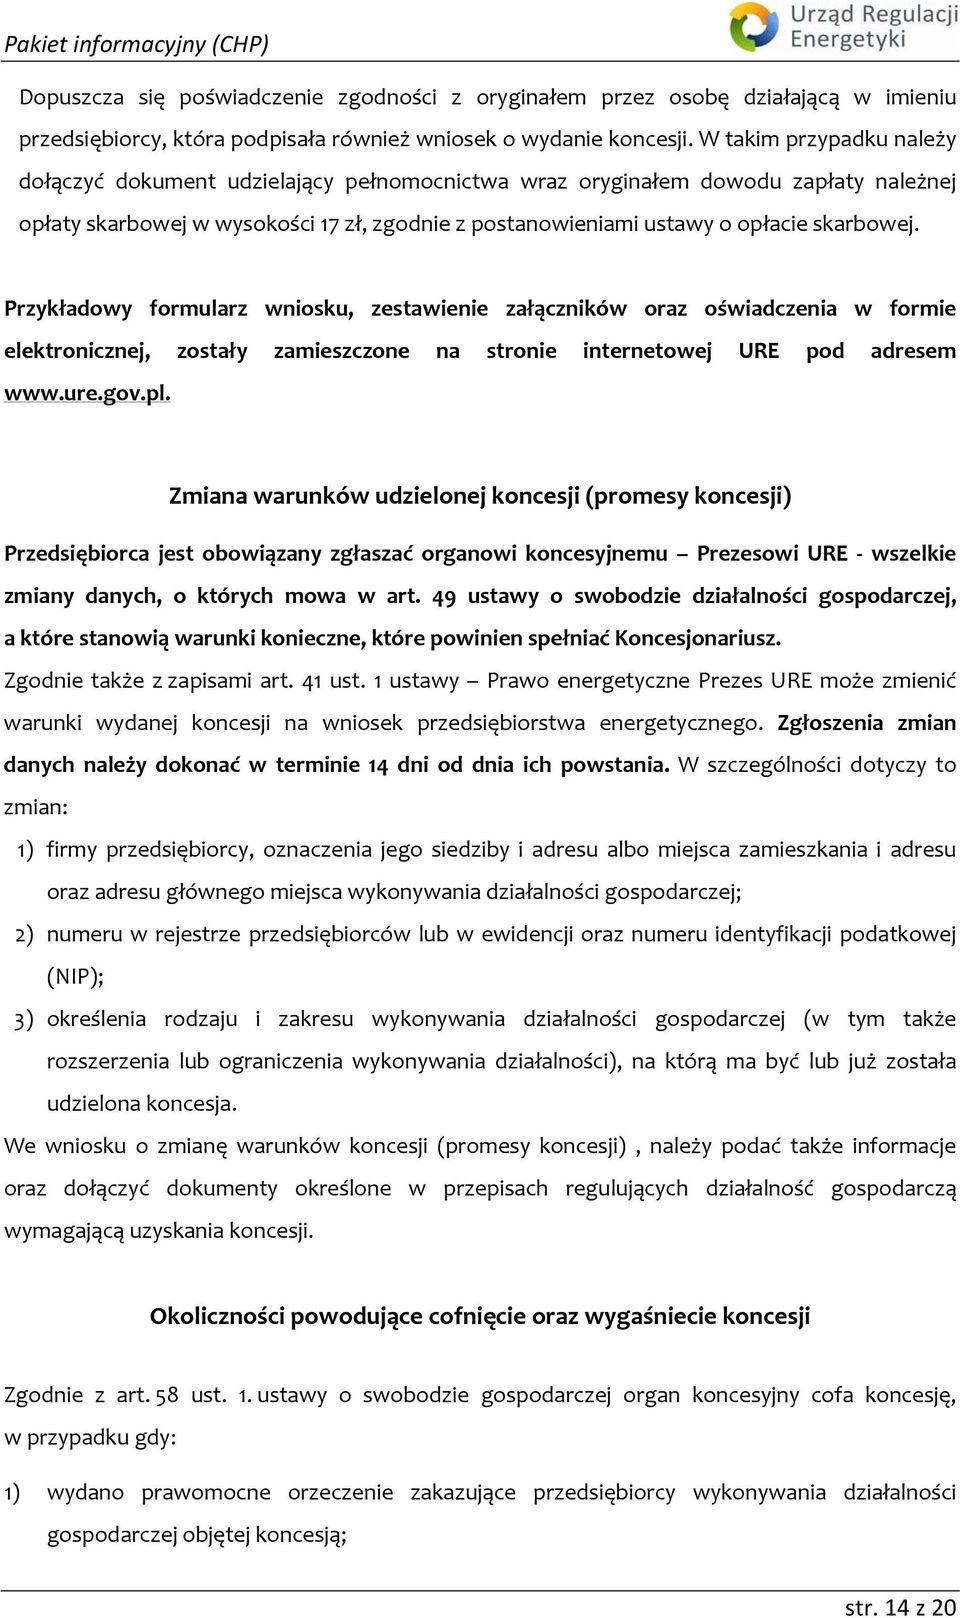 Przykładowy formularz wniosku, zestawienie załączników oraz oświadczenia w formie elektronicznej, zostały zamieszczone na stronie internetowej URE pod adresem www.ure.gov.pl.